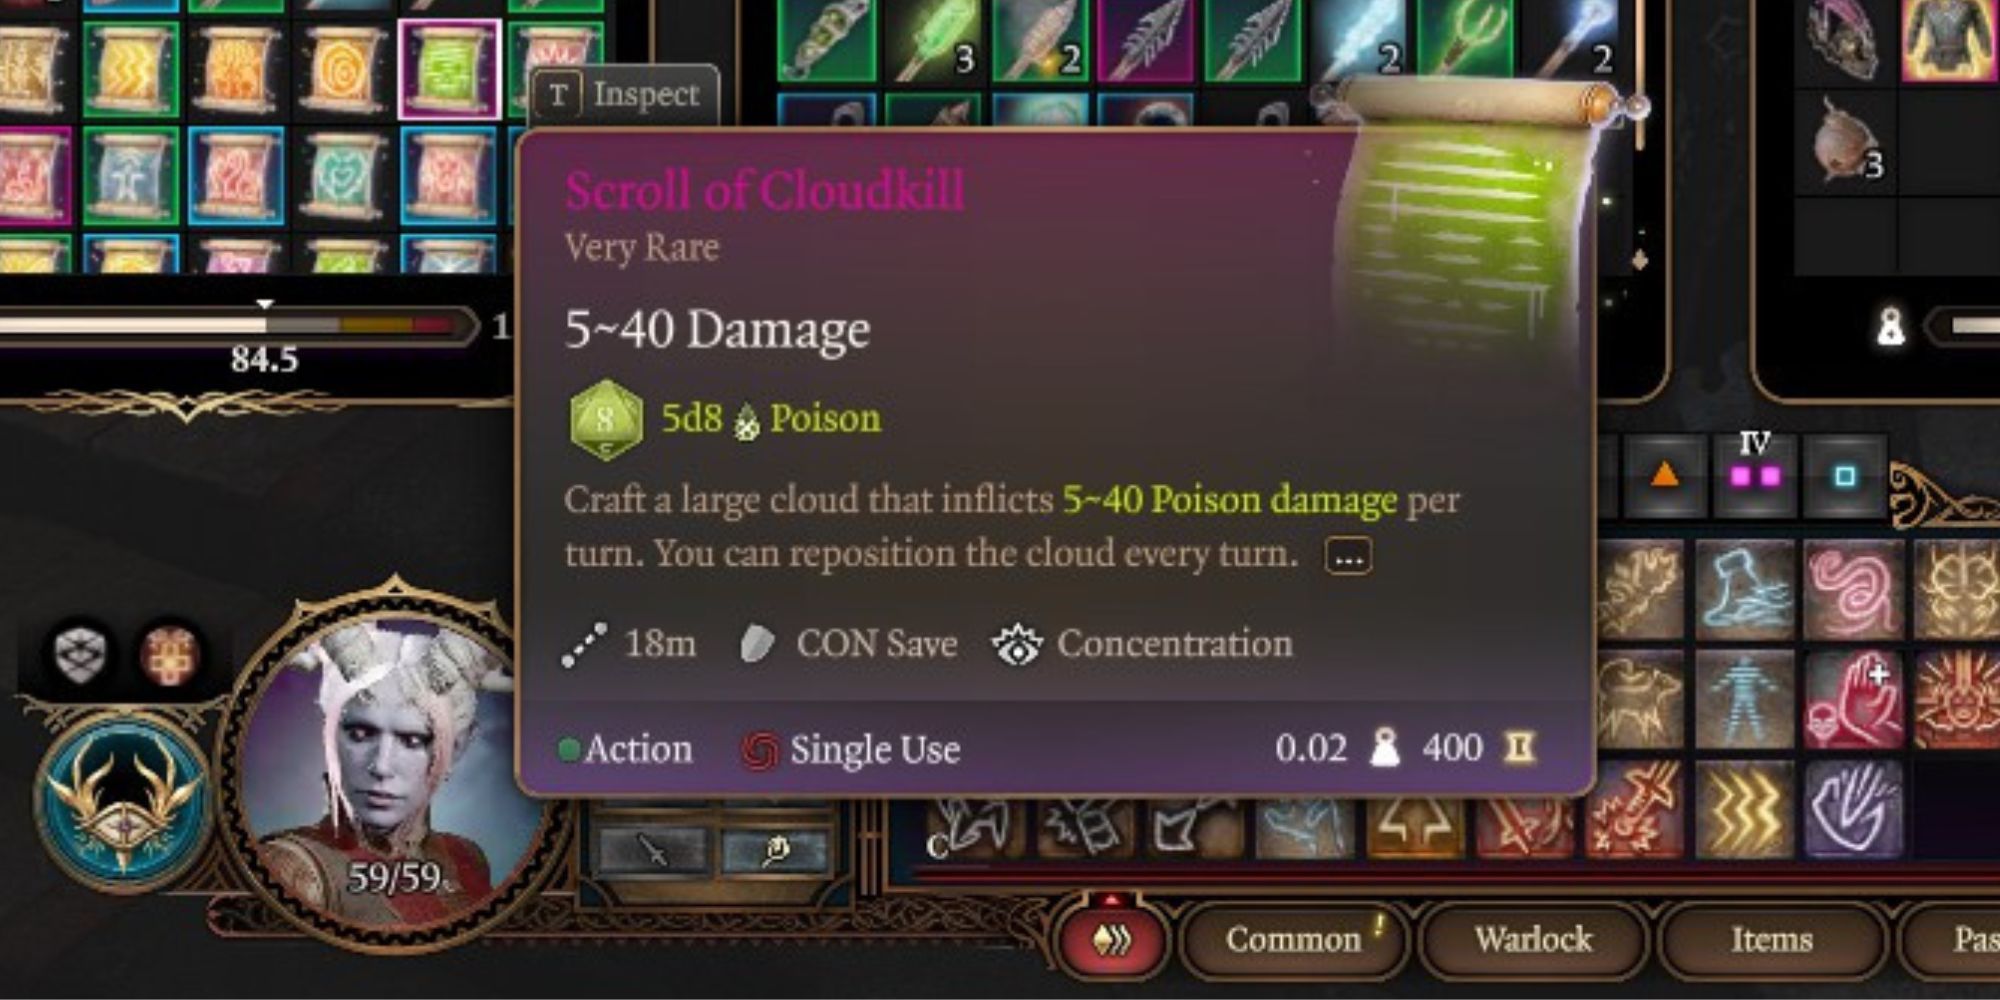 A scroll of Cloudkill in Baldur's Gate 3